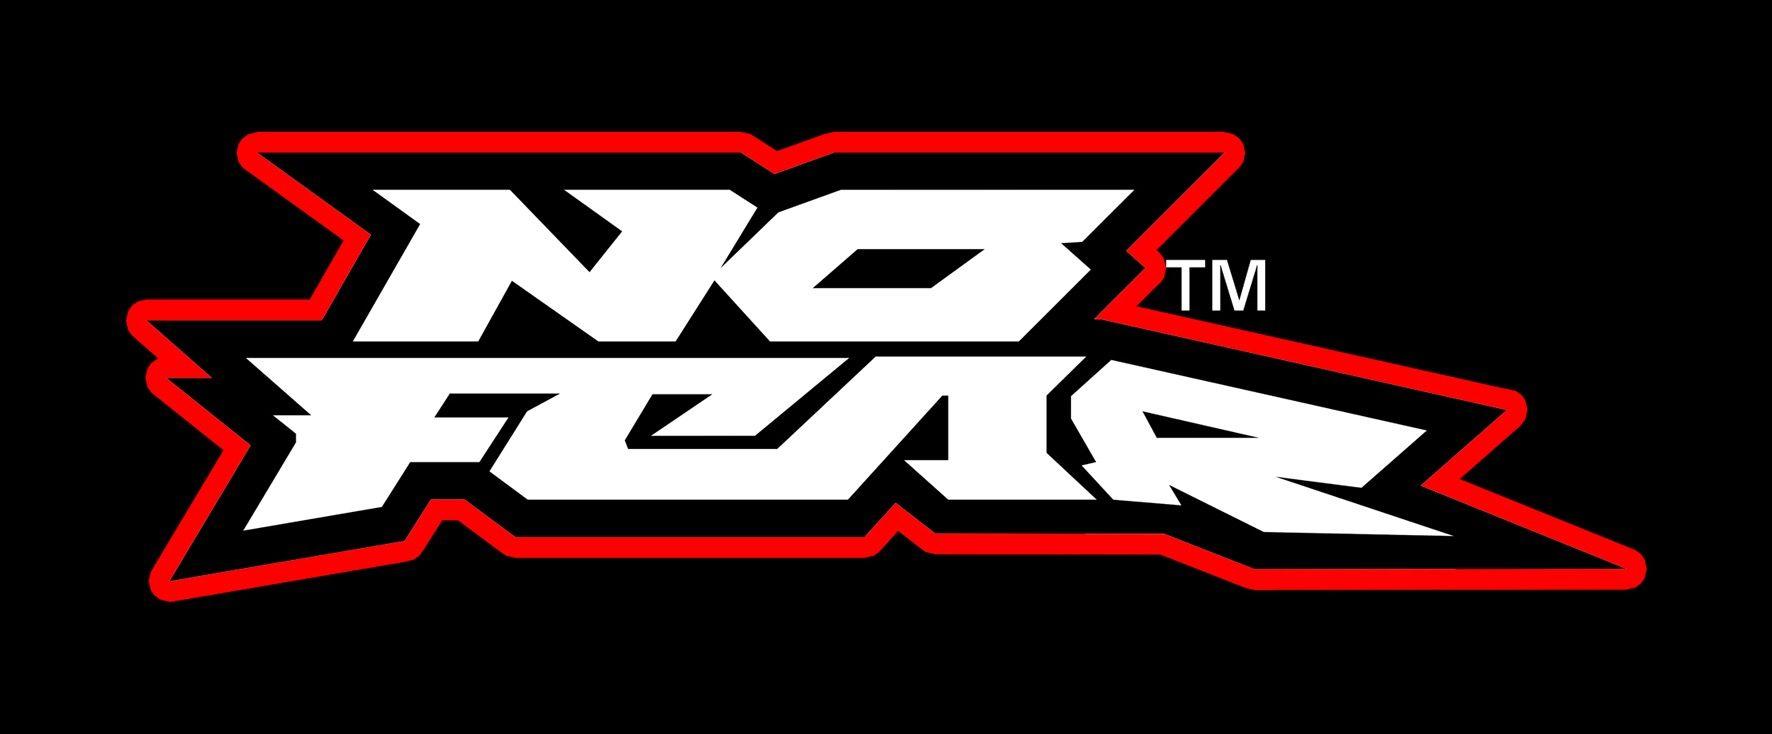 The No Fear Logo - LogoDix